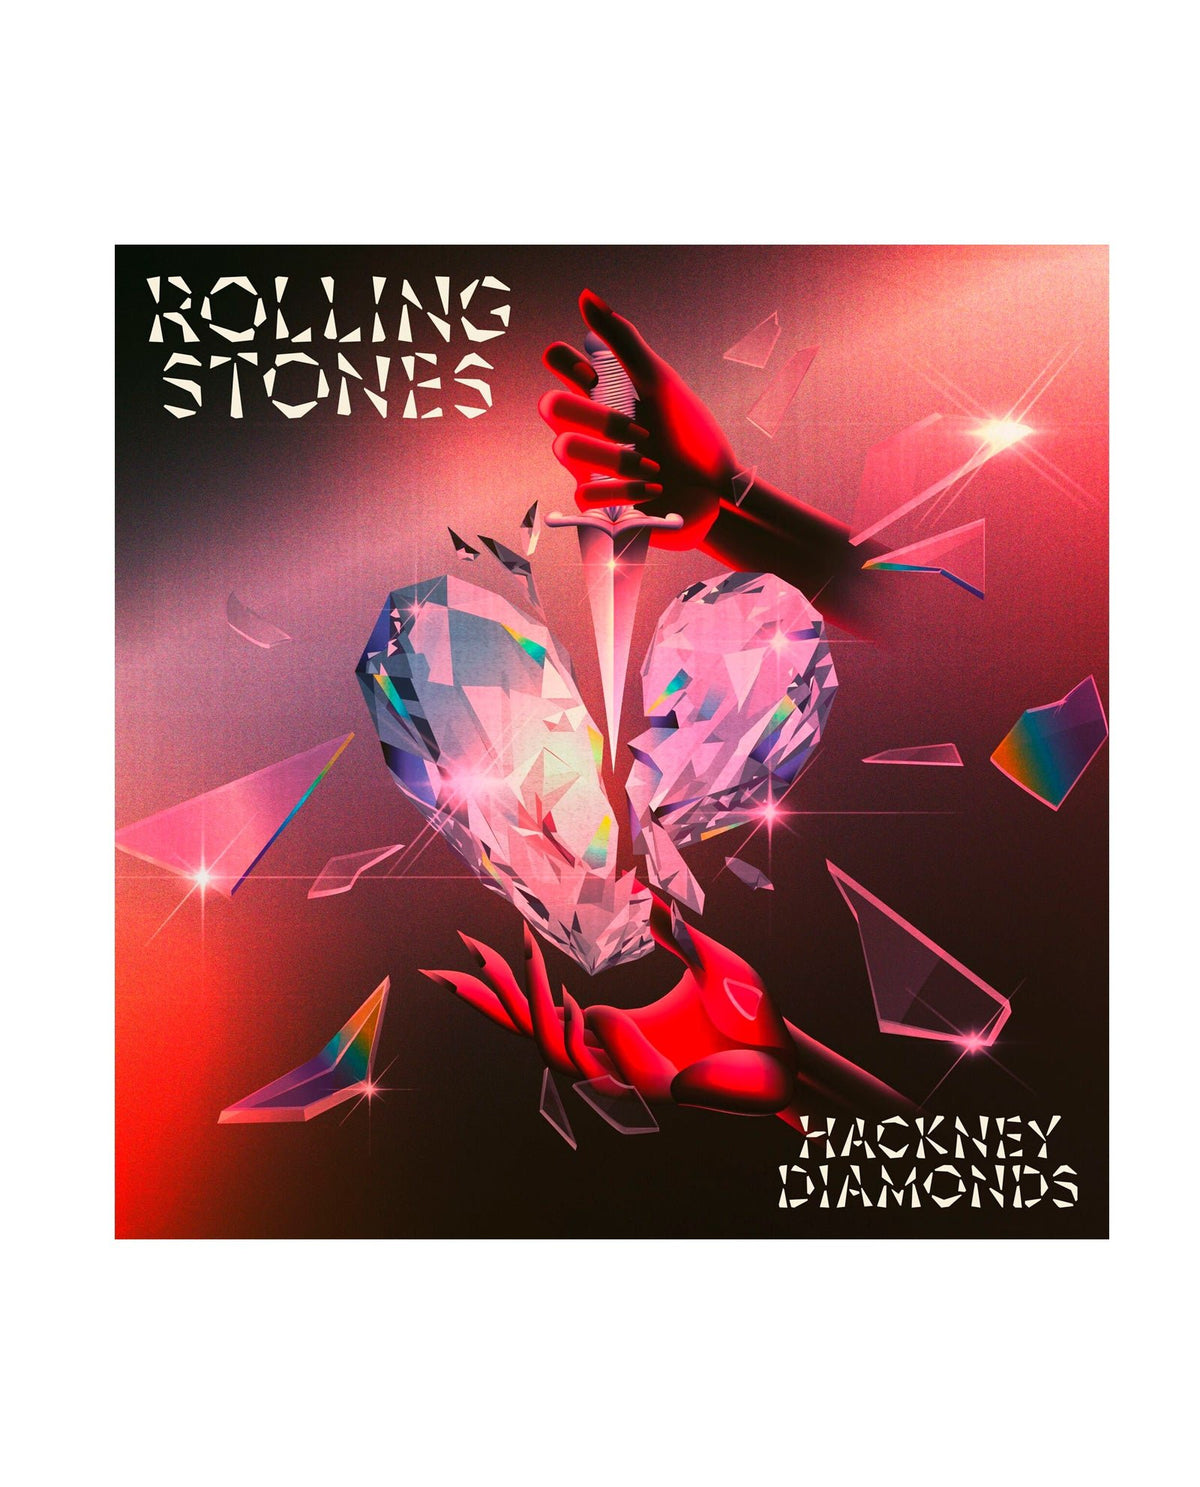 The Rolling Stones - CD (Edición Jewel) "Hackney Diamonds" - D2fy · Rocktud - Rocktud